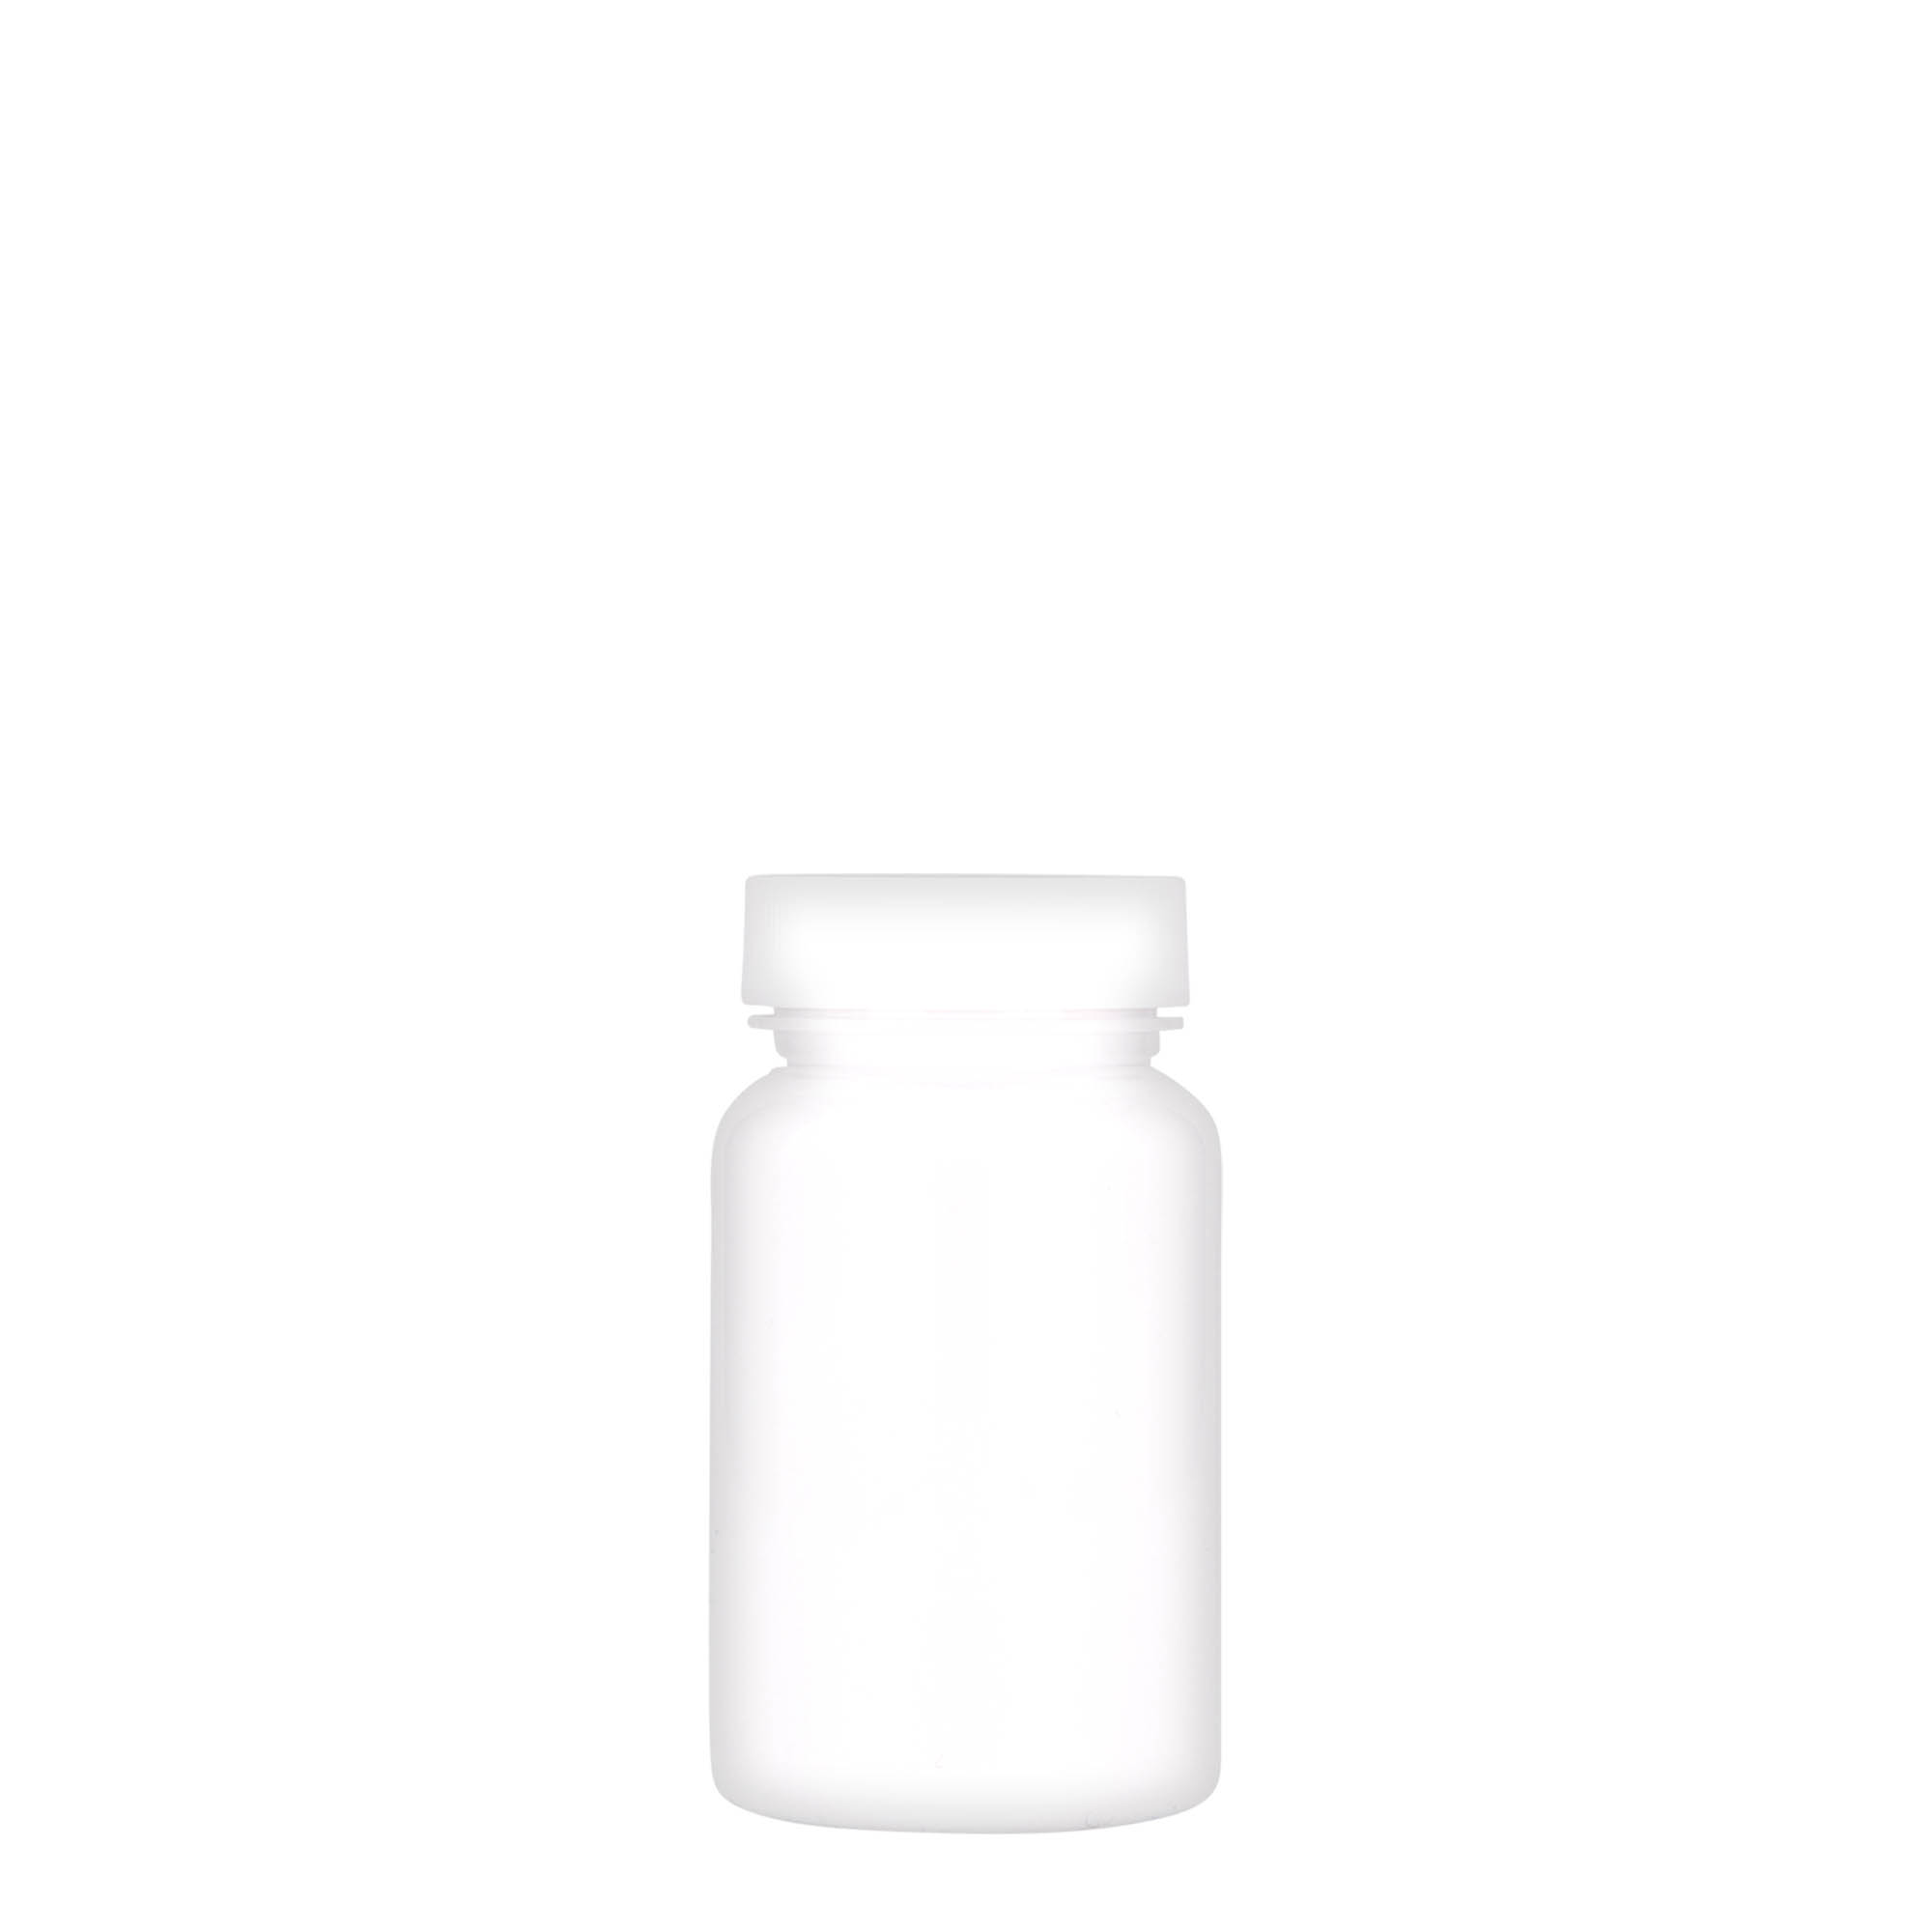 75 ml PET packer, plastic, white, closure: GPI 38/400